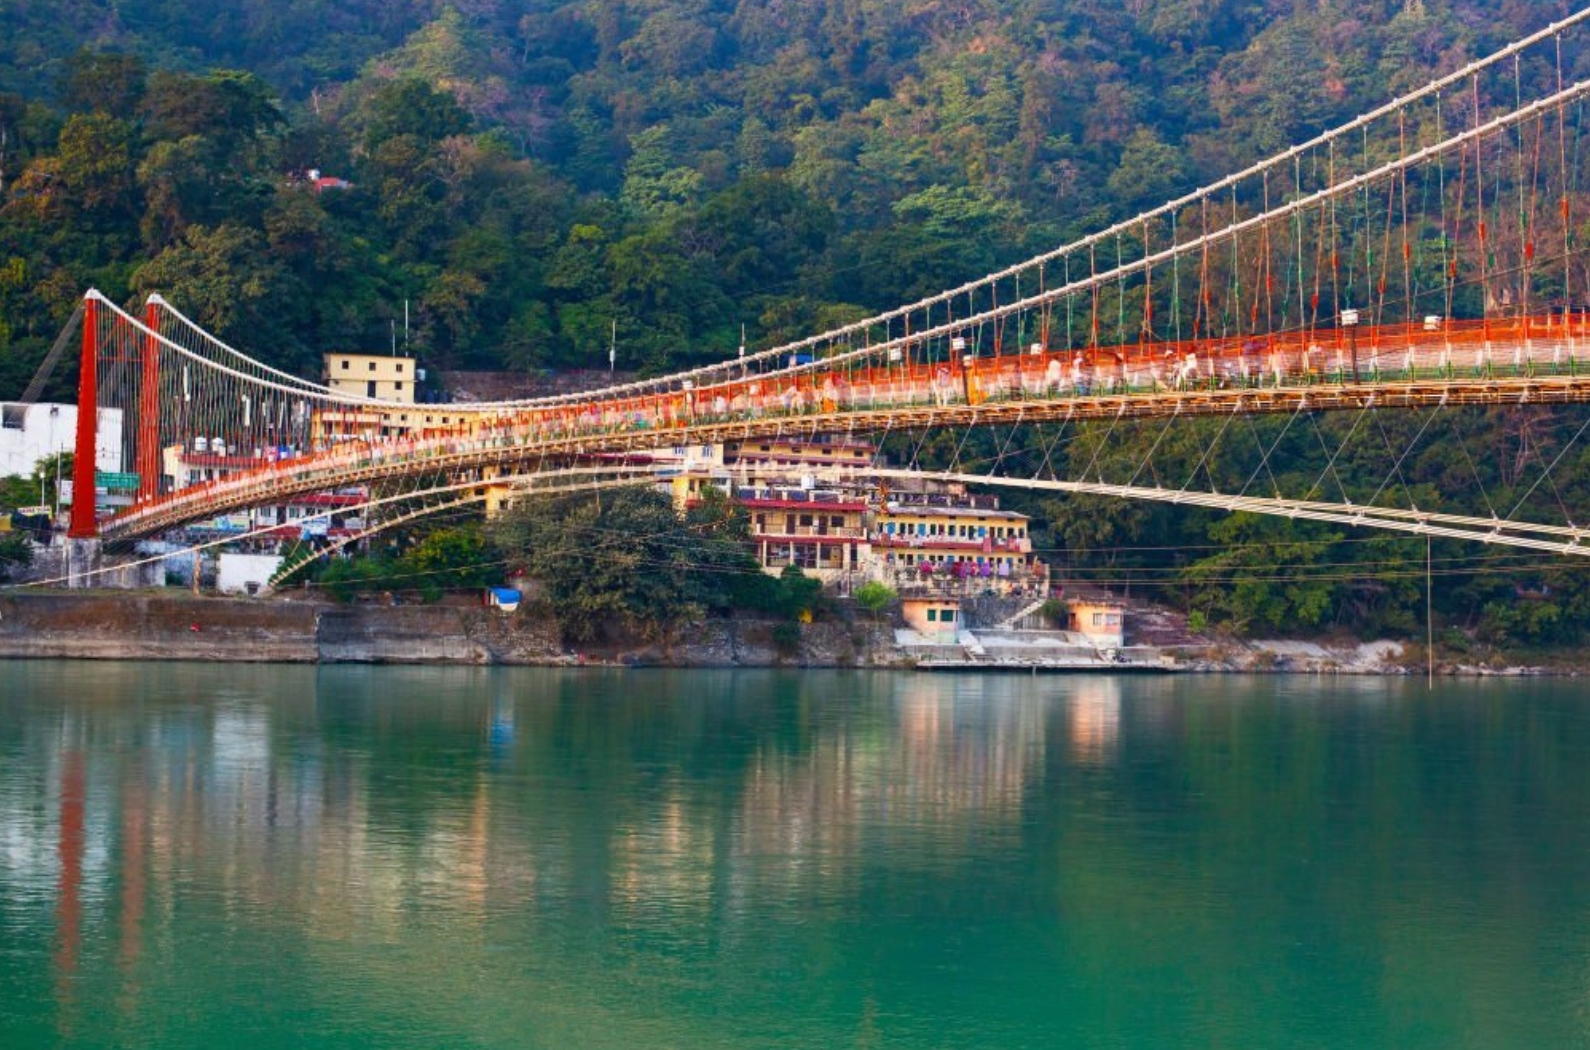 Beautiful Ram Jhula Bridge and Ganga river taken in Rishikesh, India.